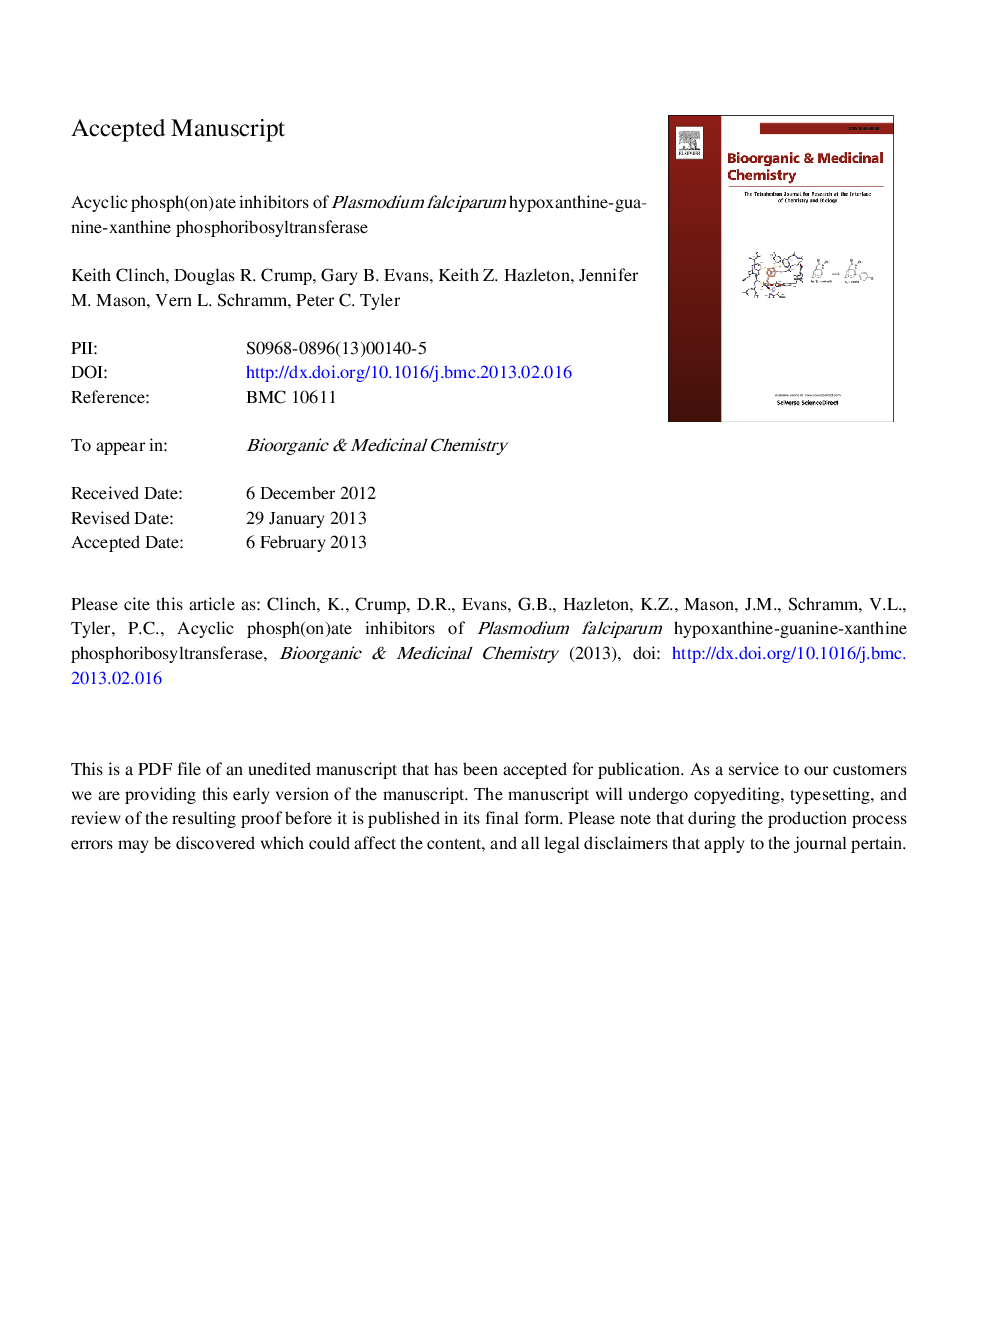 اسید فسفریک (در) مهارکننده های پلاسمودیوم فالسیپاروم هیپوکسانتین-گوانین-زانتی فسفریبوسیل ترانسفراز 